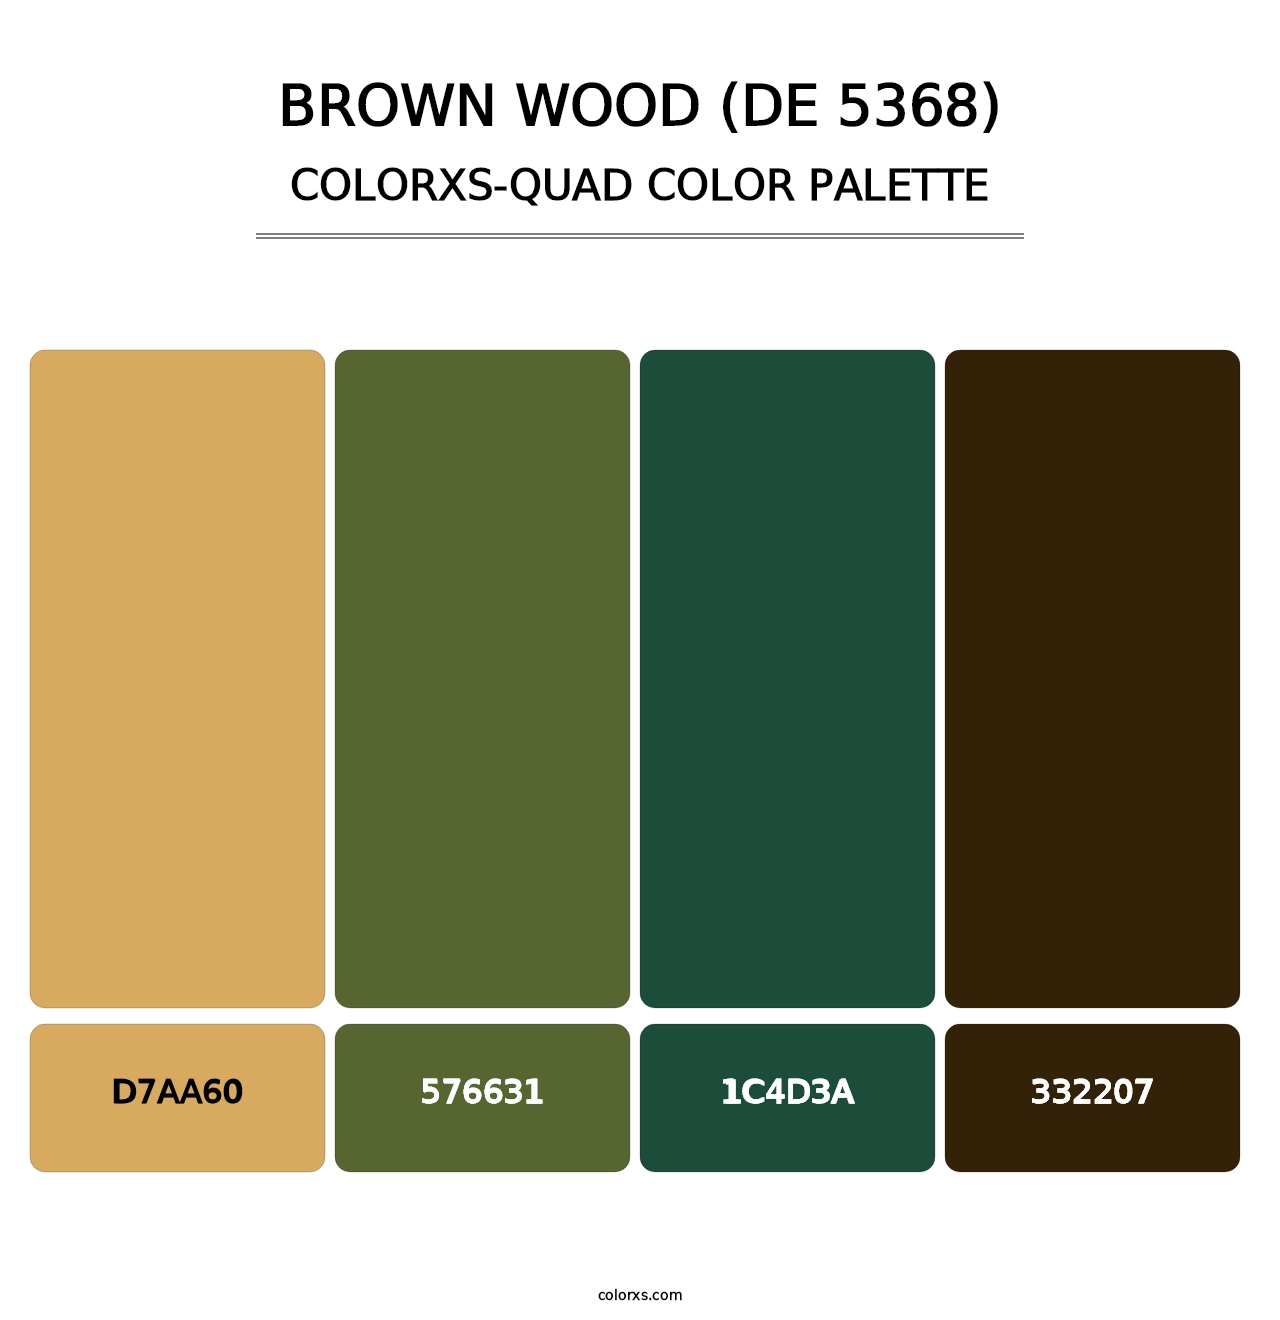 Brown Wood (DE 5368) - Colorxs Quad Palette